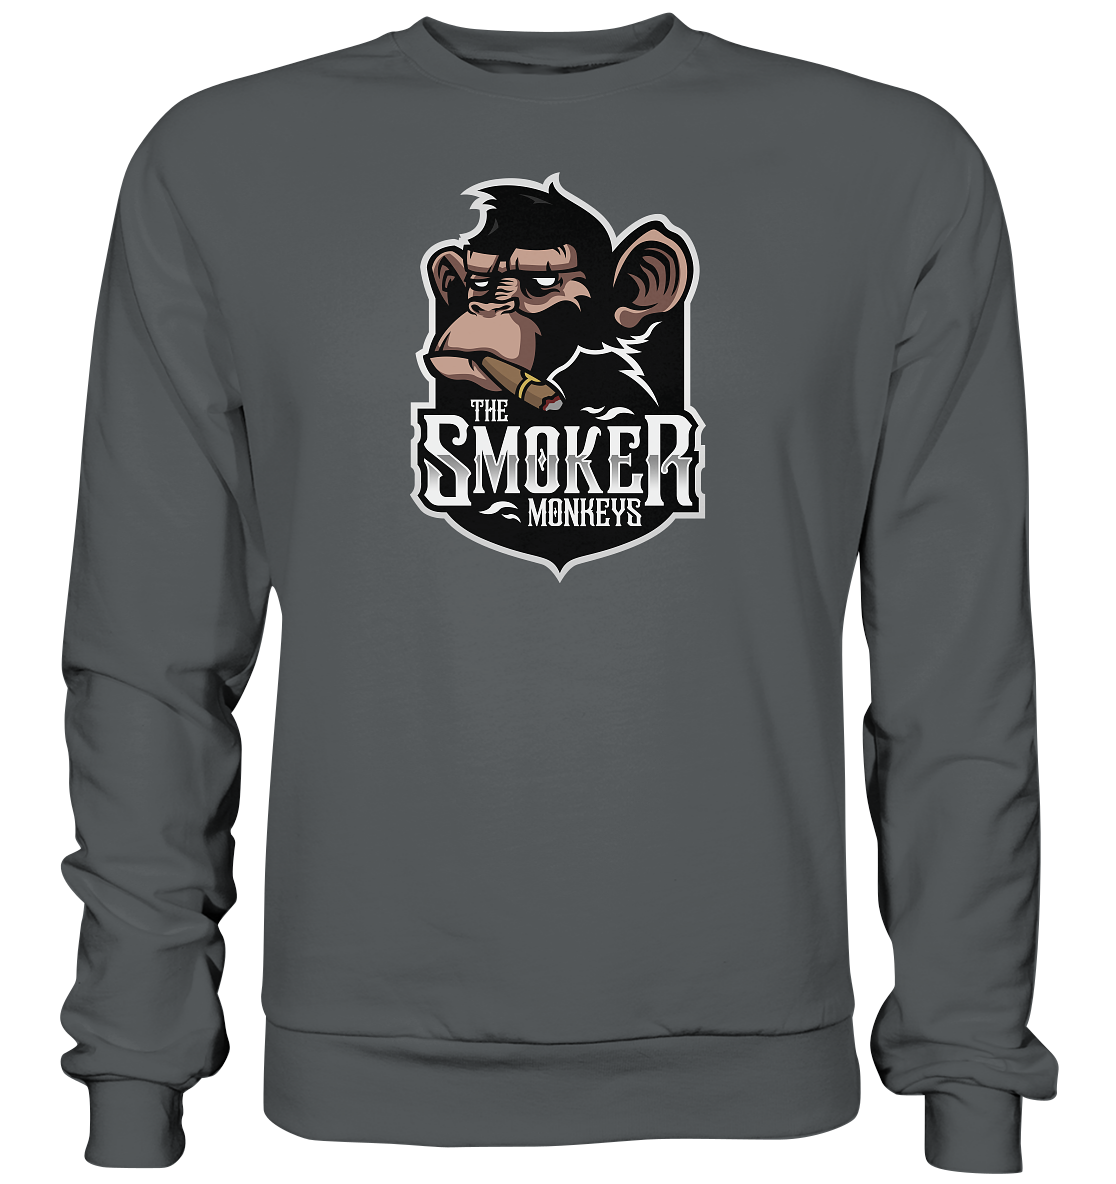 THE SMOKER MONKEYS - Basic Sweatshirt